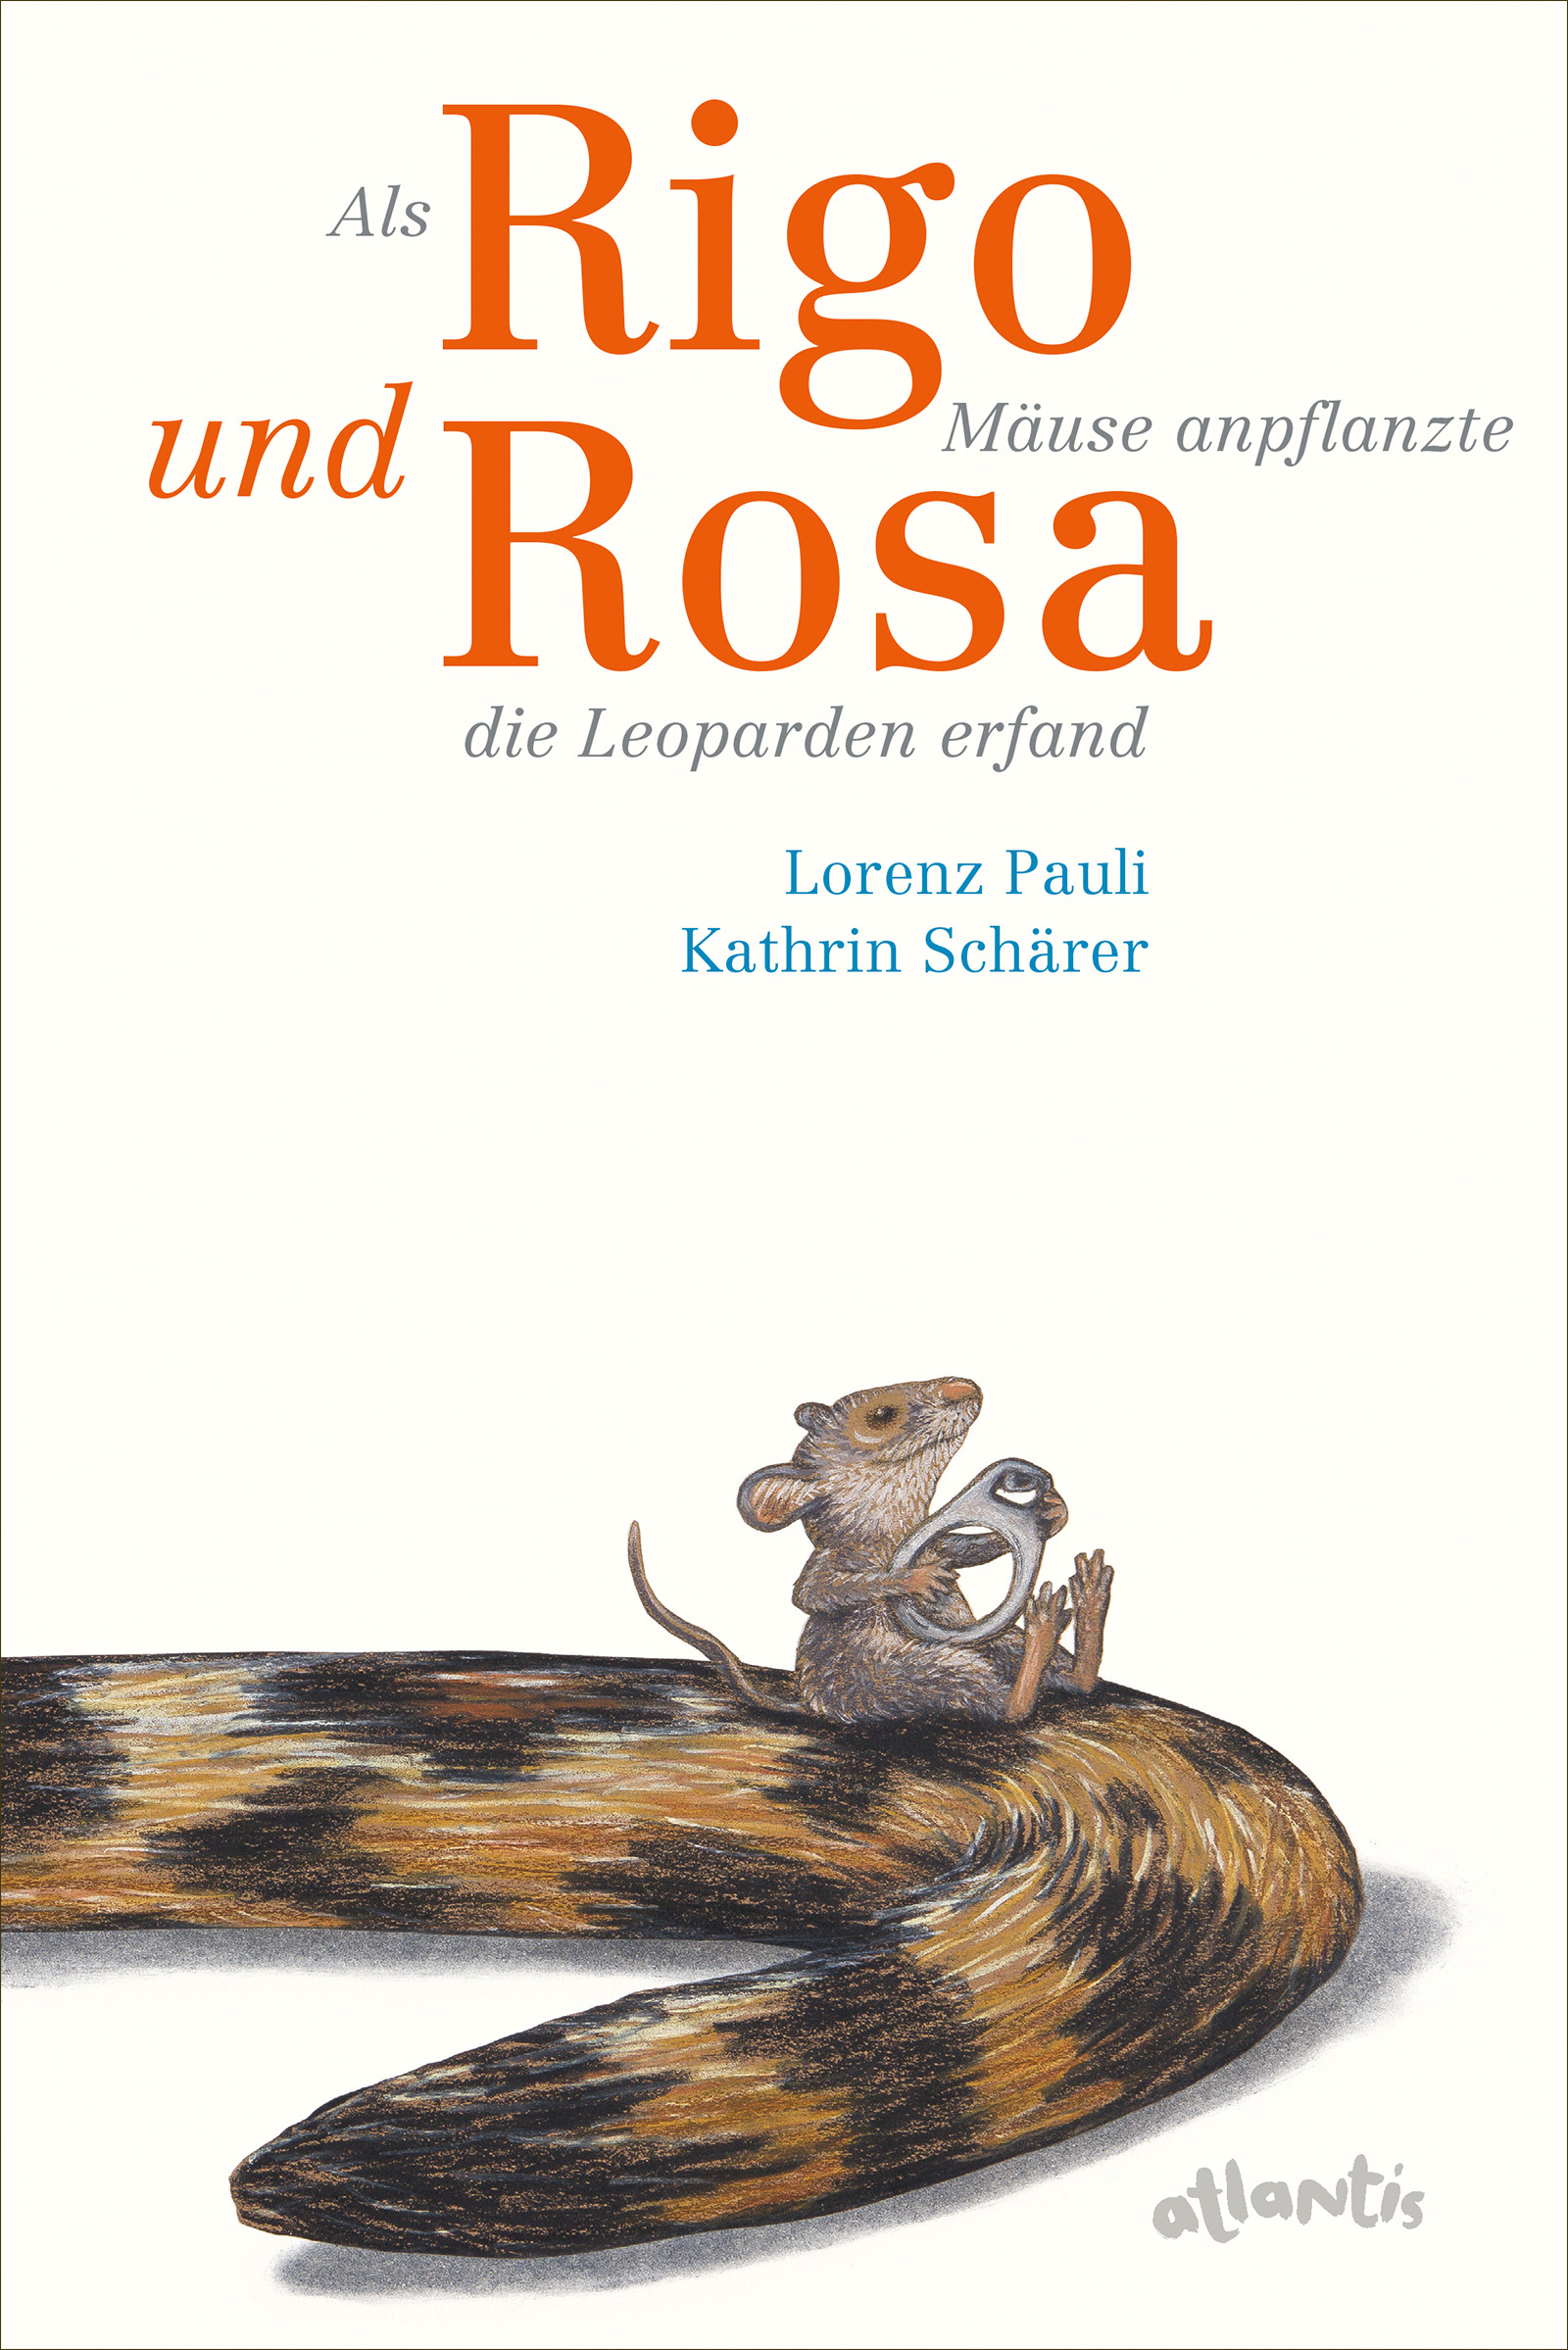 Buchcover "Als Rigo Mäuse anpflanzte und Rosa die Leoparden erfand", Atlantis